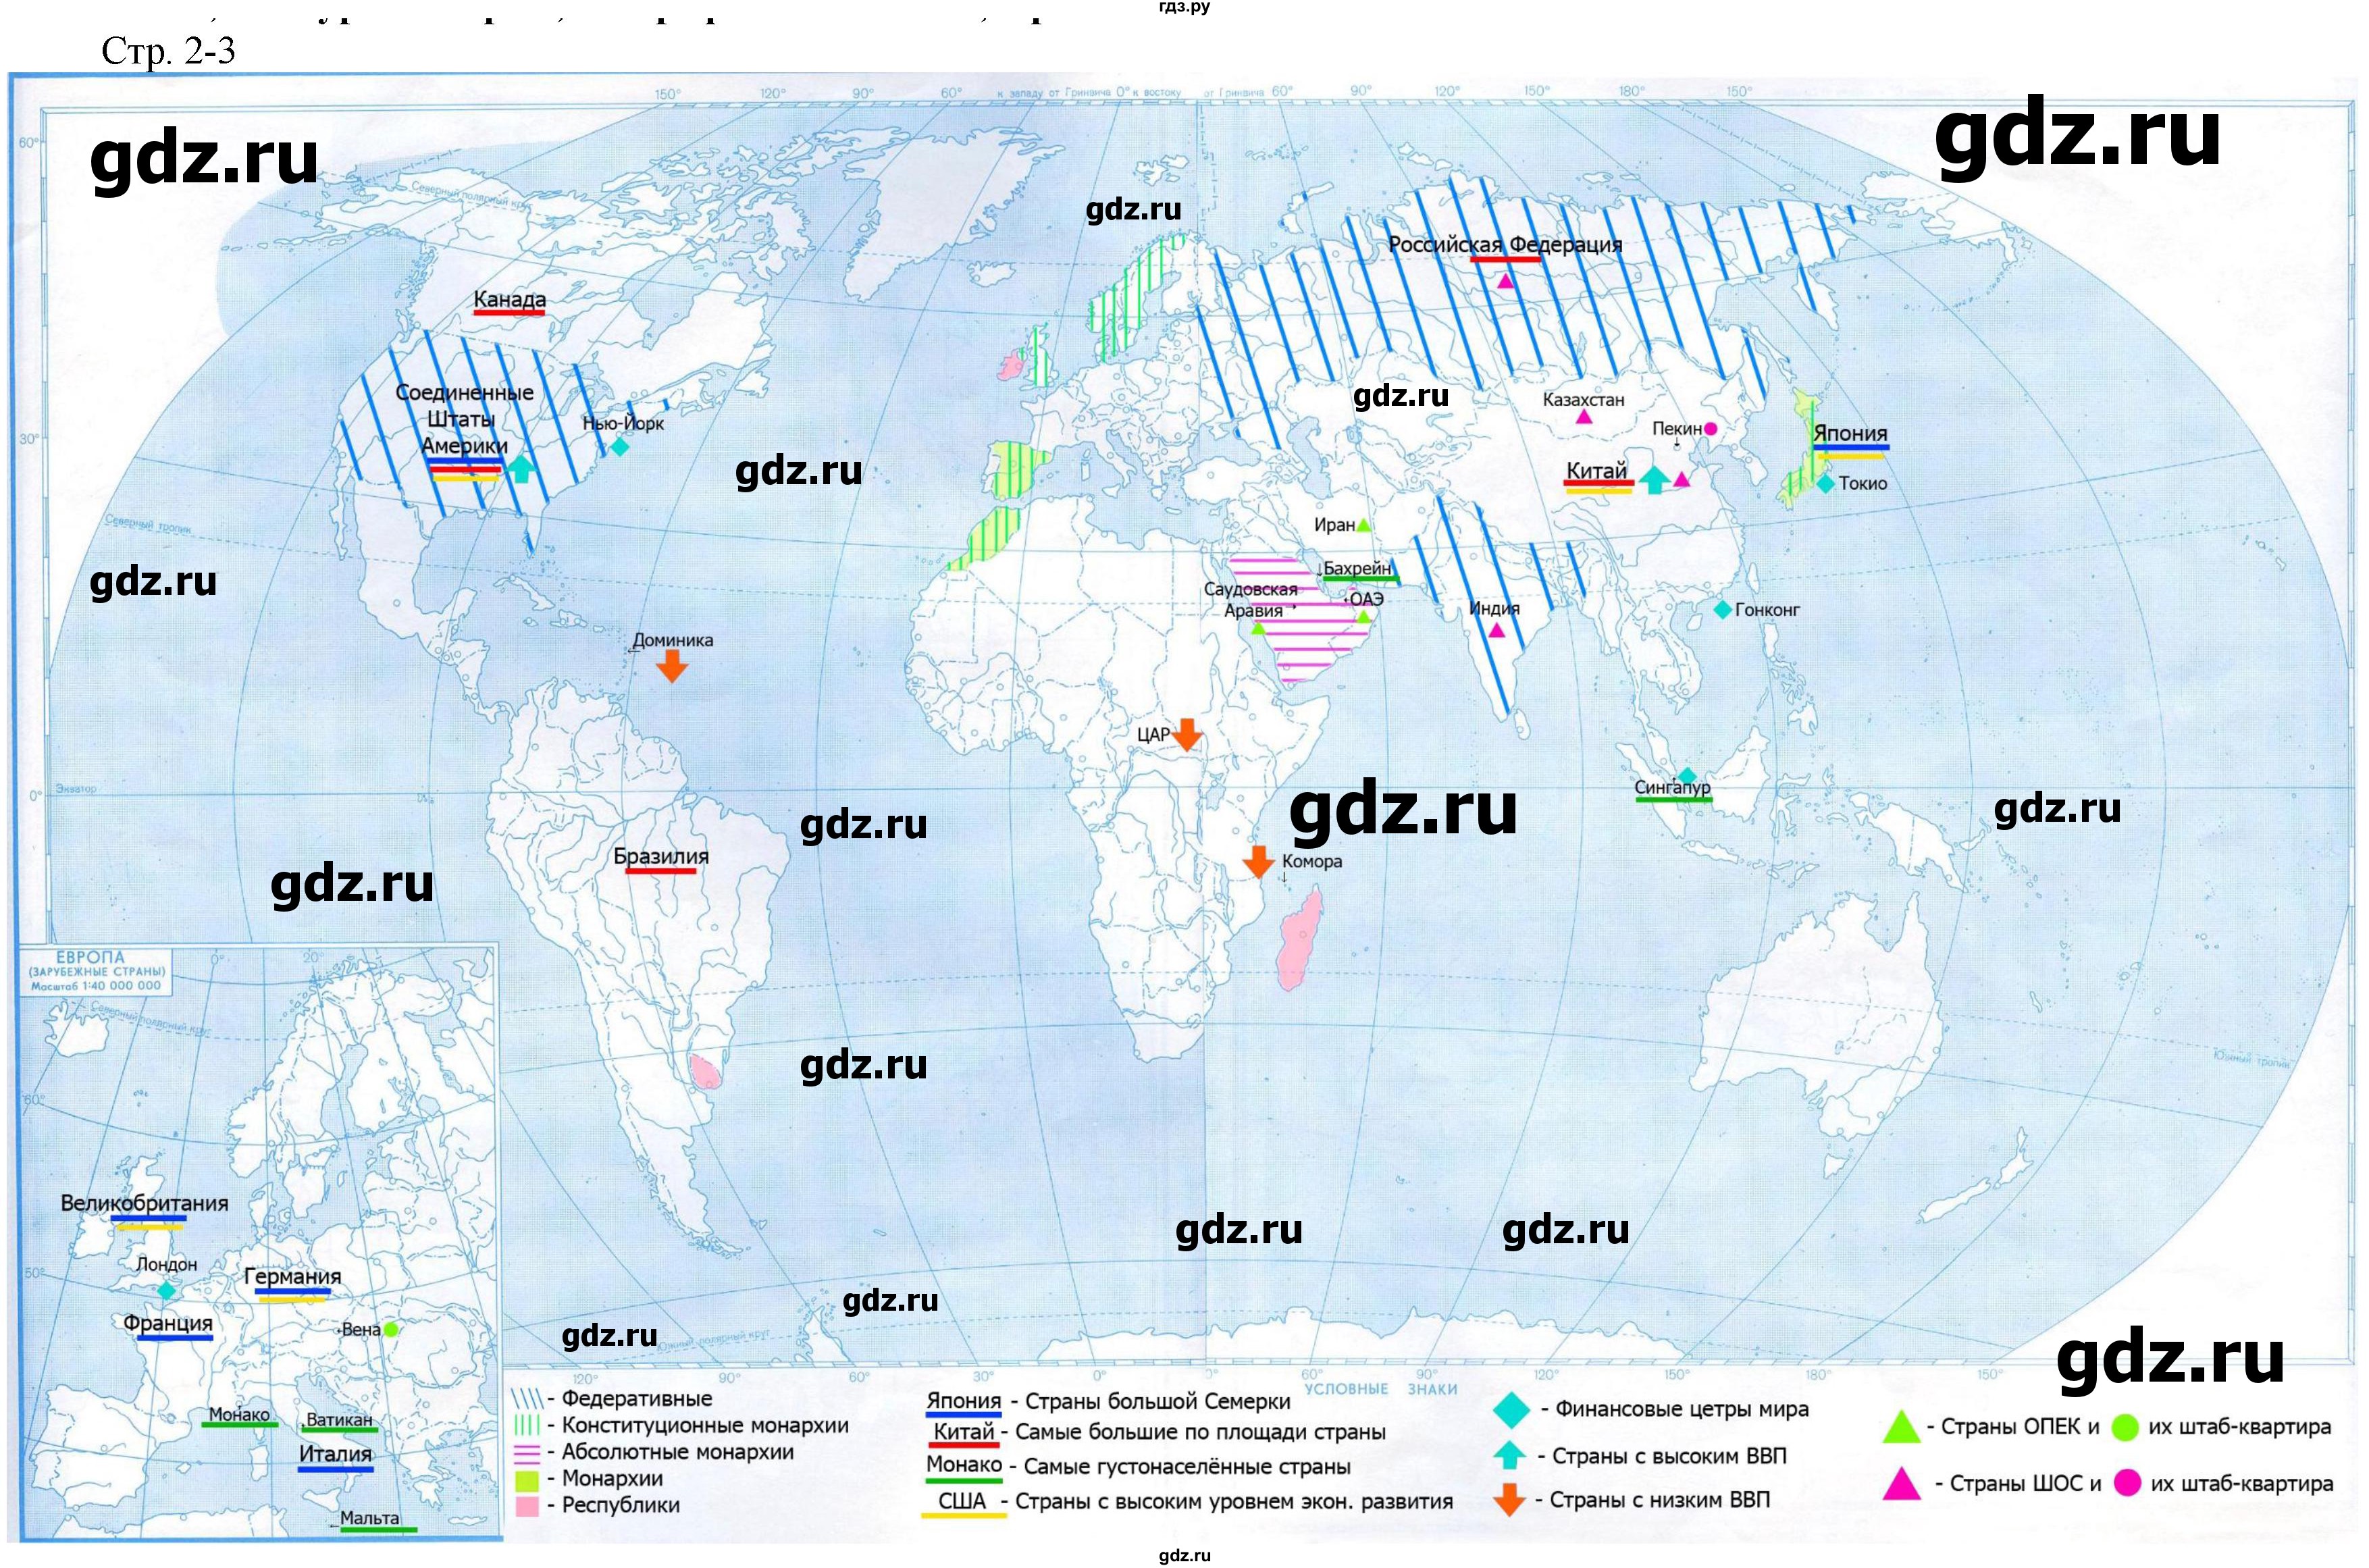 ГДЗ контурные карты стр.2-3 география 10‐11 класс контурные картыПриваловский